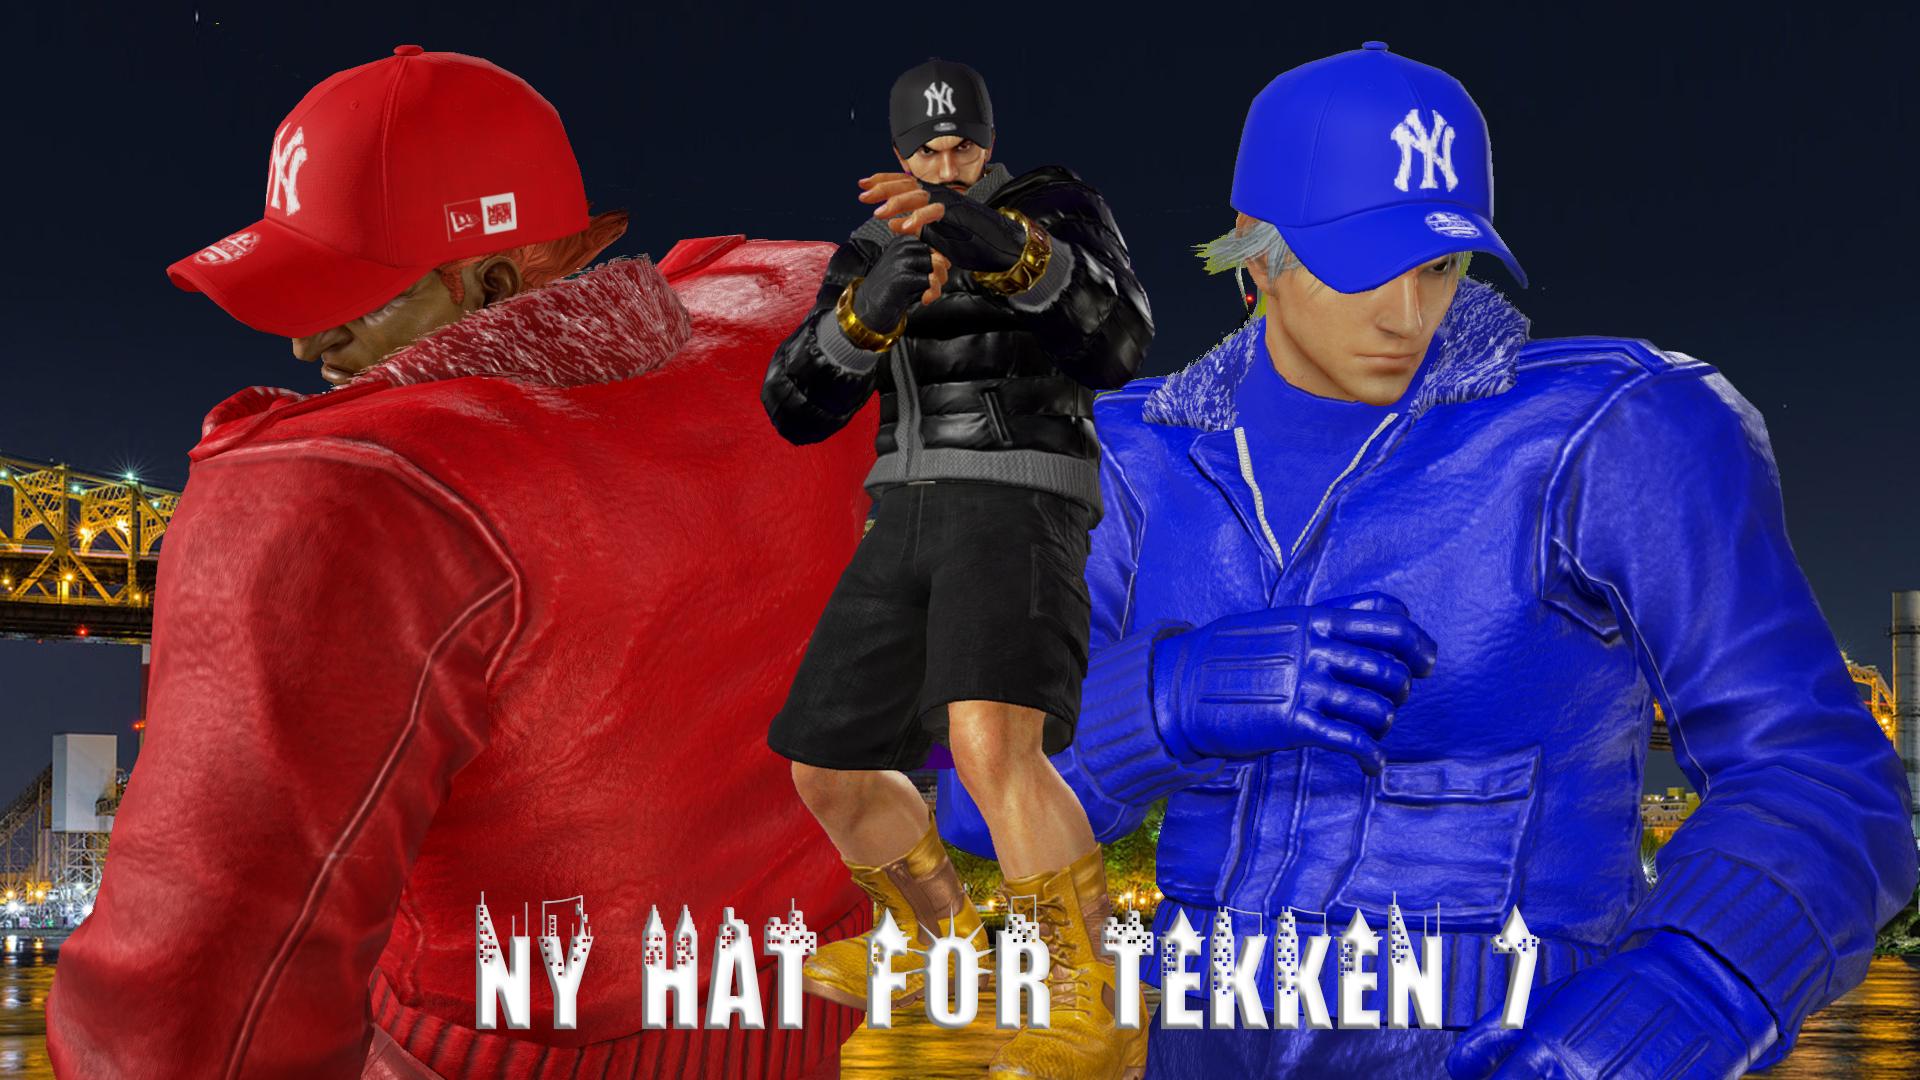 NY Yankees hat for Tekken  7